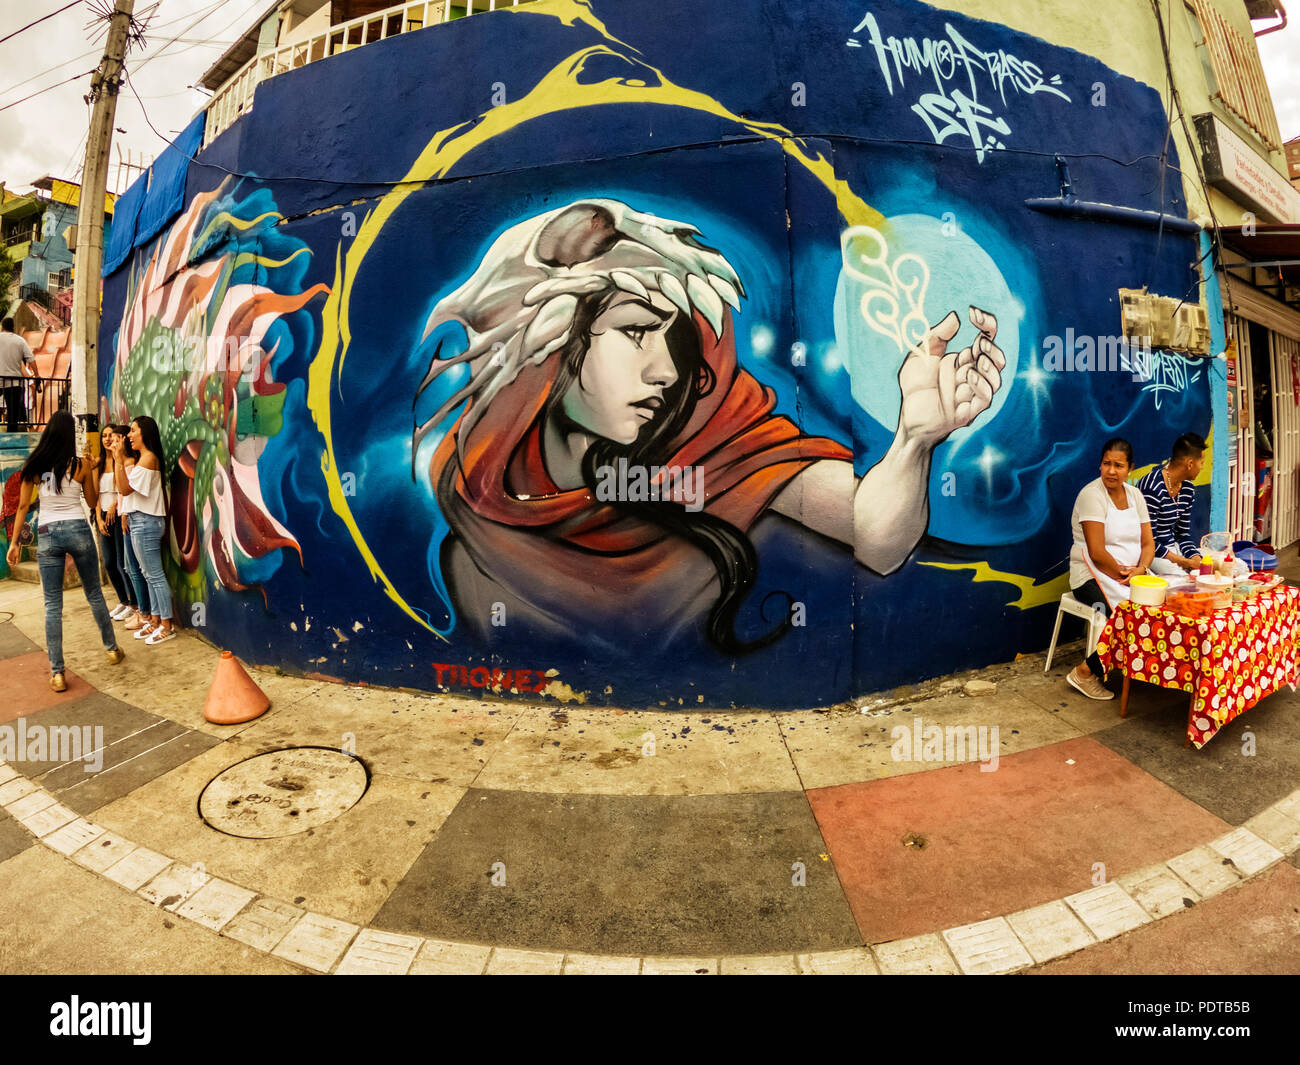 Medellin, Colombie - Mars 28, 2018 : Street art graffiti sur un mur dans la zone appelée Comuna 13 dans la région de Medellin, Colombie Banque D'Images